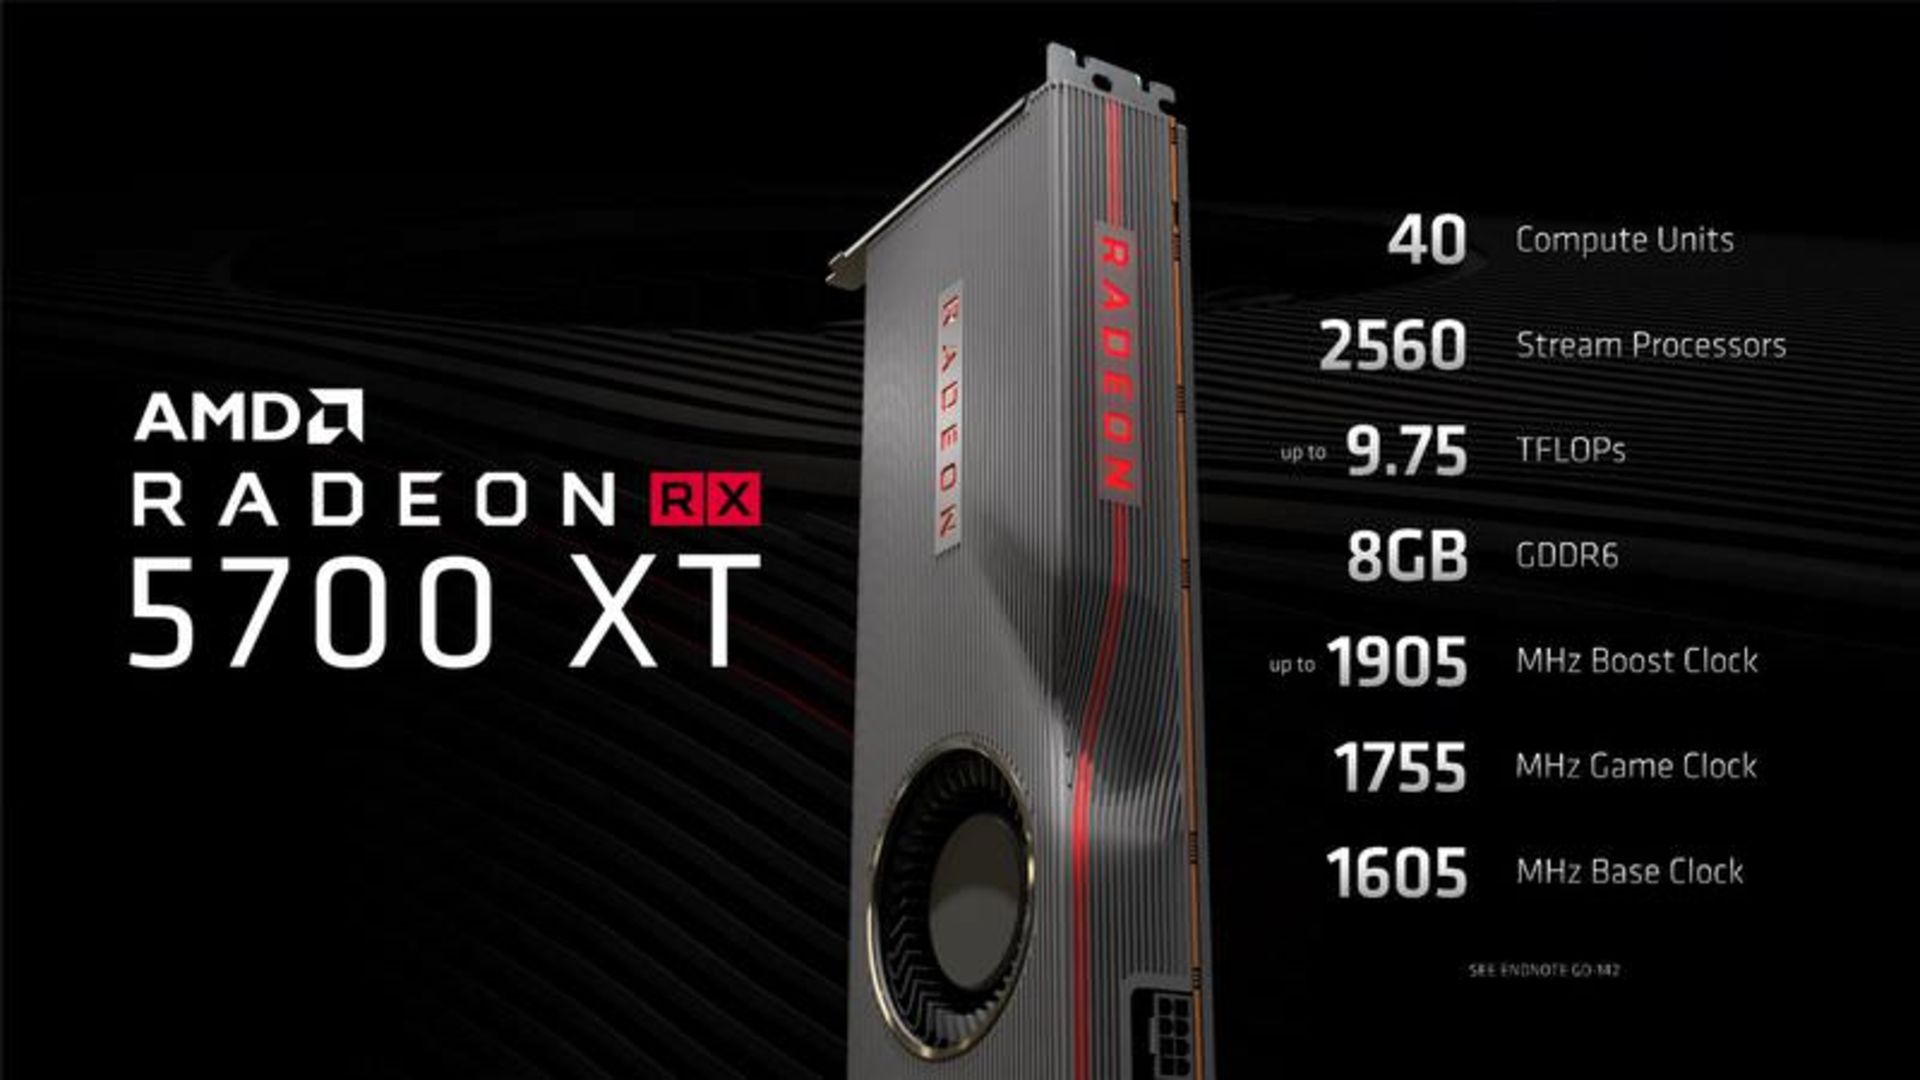 مرجع متخصصين ايران AMD رادئون RX 5700 XT